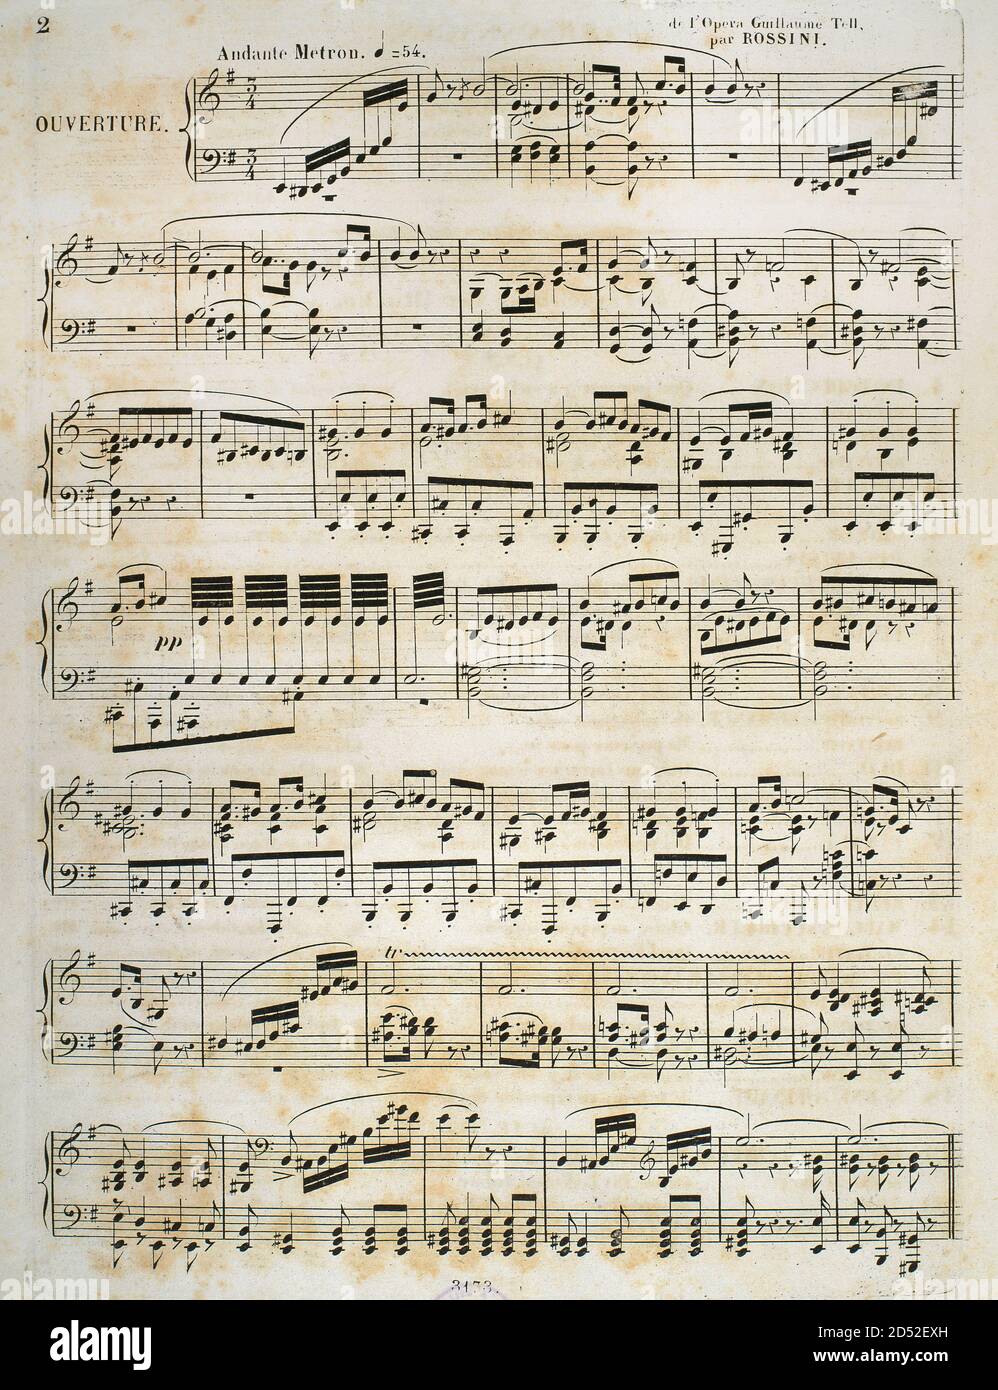 Gioacchino Rossini (1792-1868). Italienischer Komponist. Noten von 'William Tell'. Französischsprachige Oper in vier Akten. Sie wurde am 3. August 1829 von der Pariser Oper im Salle Le Peletier uraufgeführt. Musikbibliothek des Hofes. Turin, Italien. Stockfoto